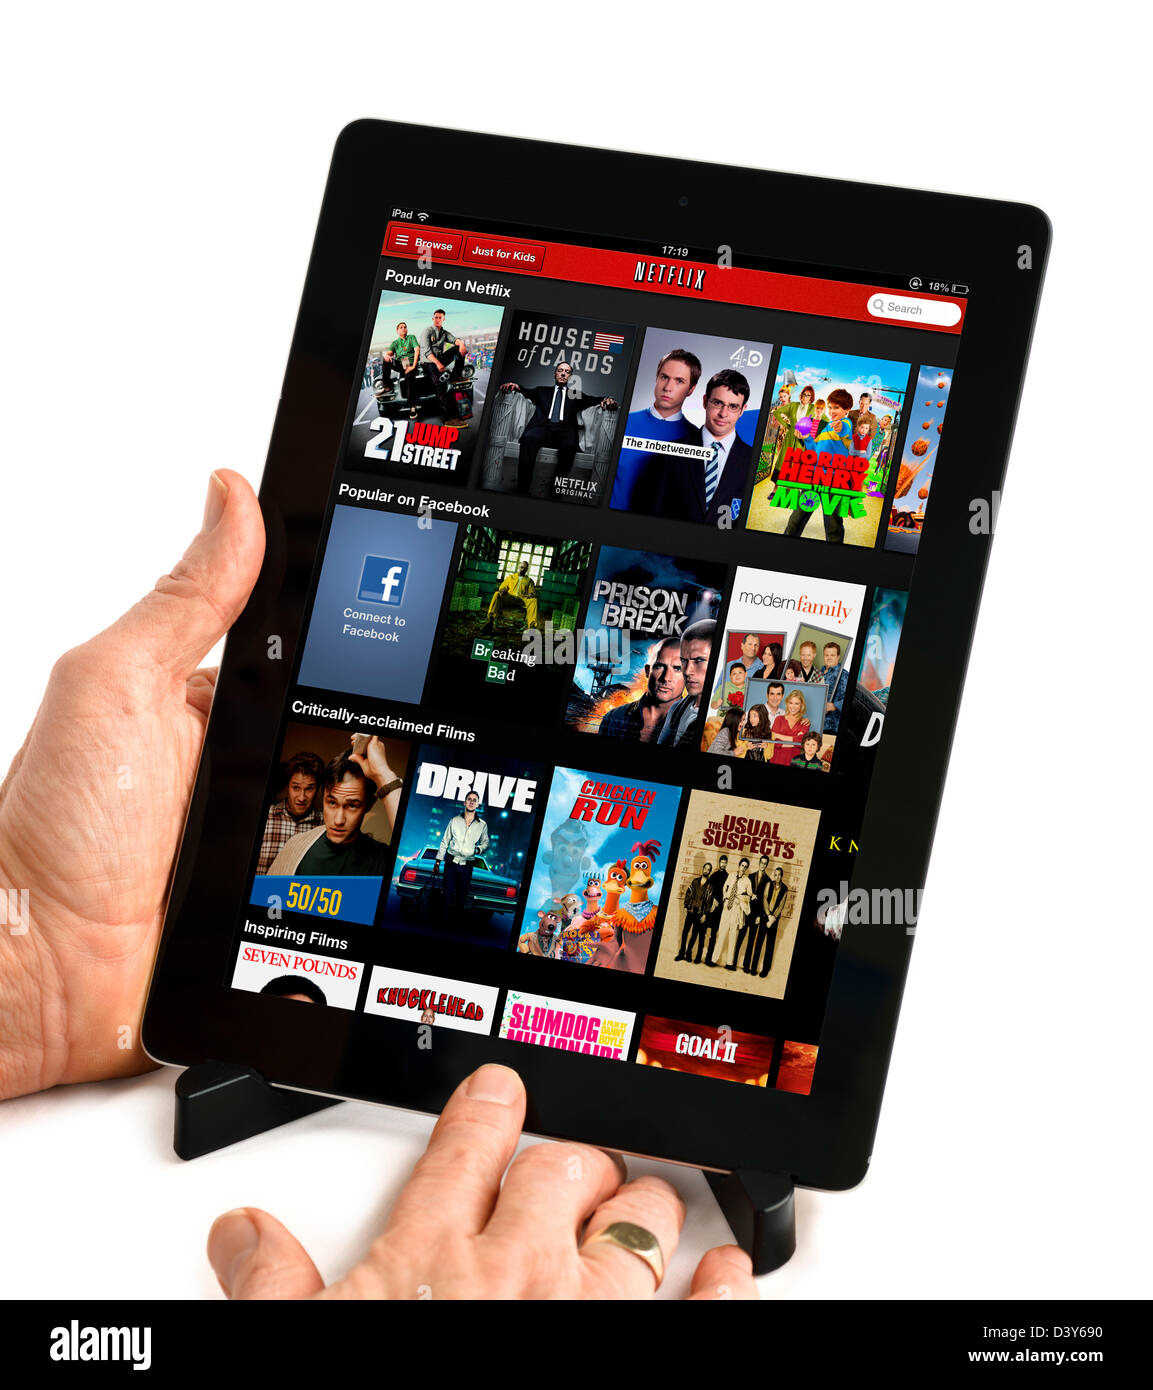 Beliebte Videos auf dem Netflix-Video-Streaming-Website, betrachtet auf eine 4. Generation iPad, UK Stockfoto